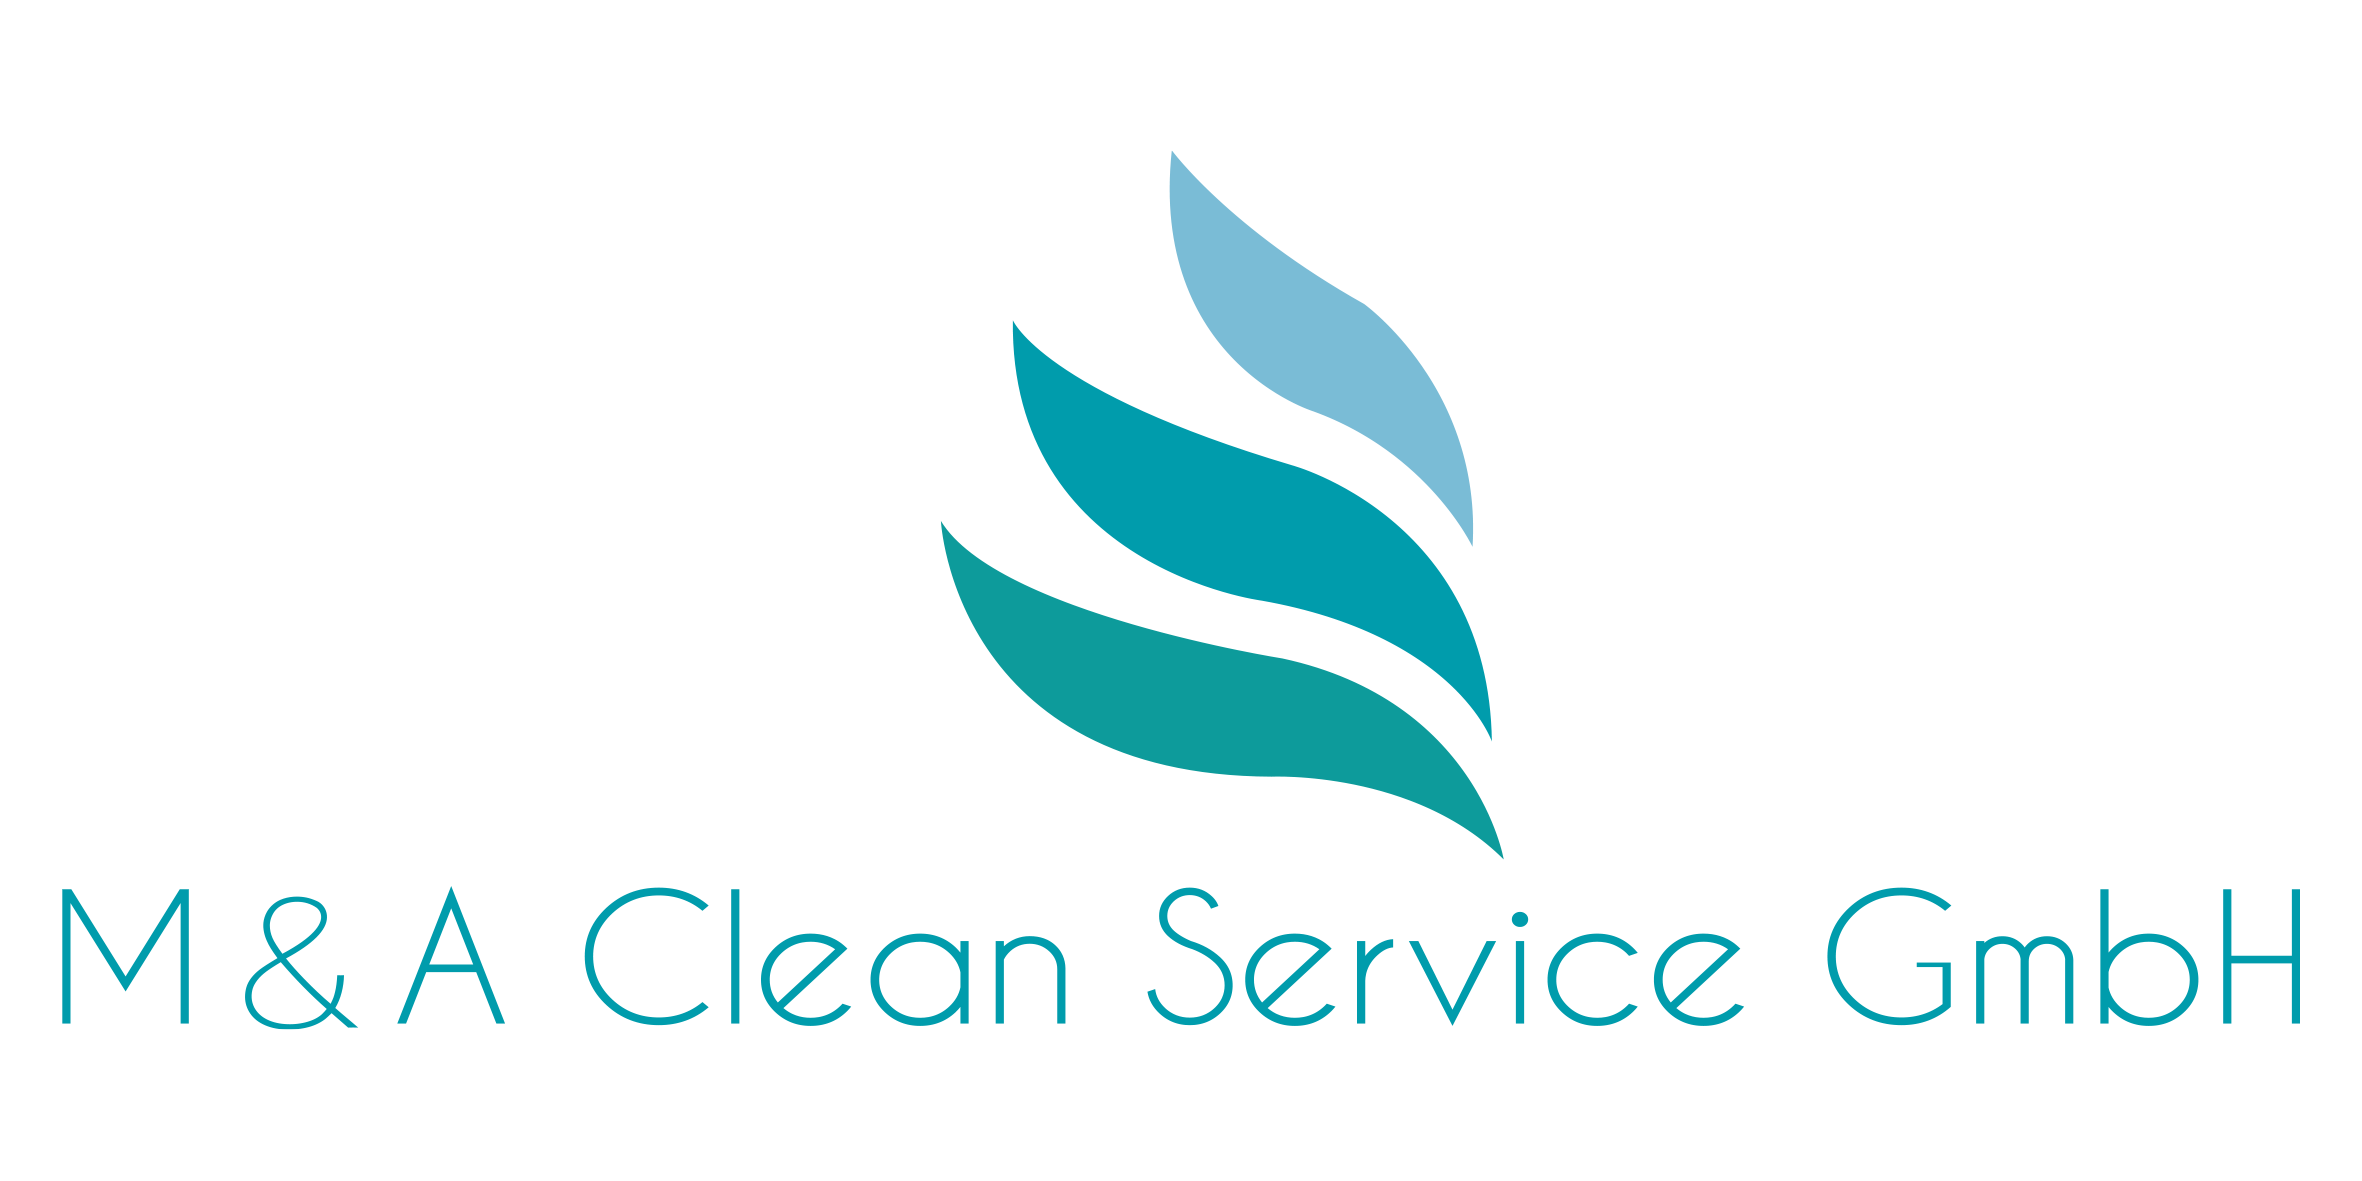 M&A Clean Service GmbH – Gebäudereinigung aus Bad Kreuznach und Umgebung